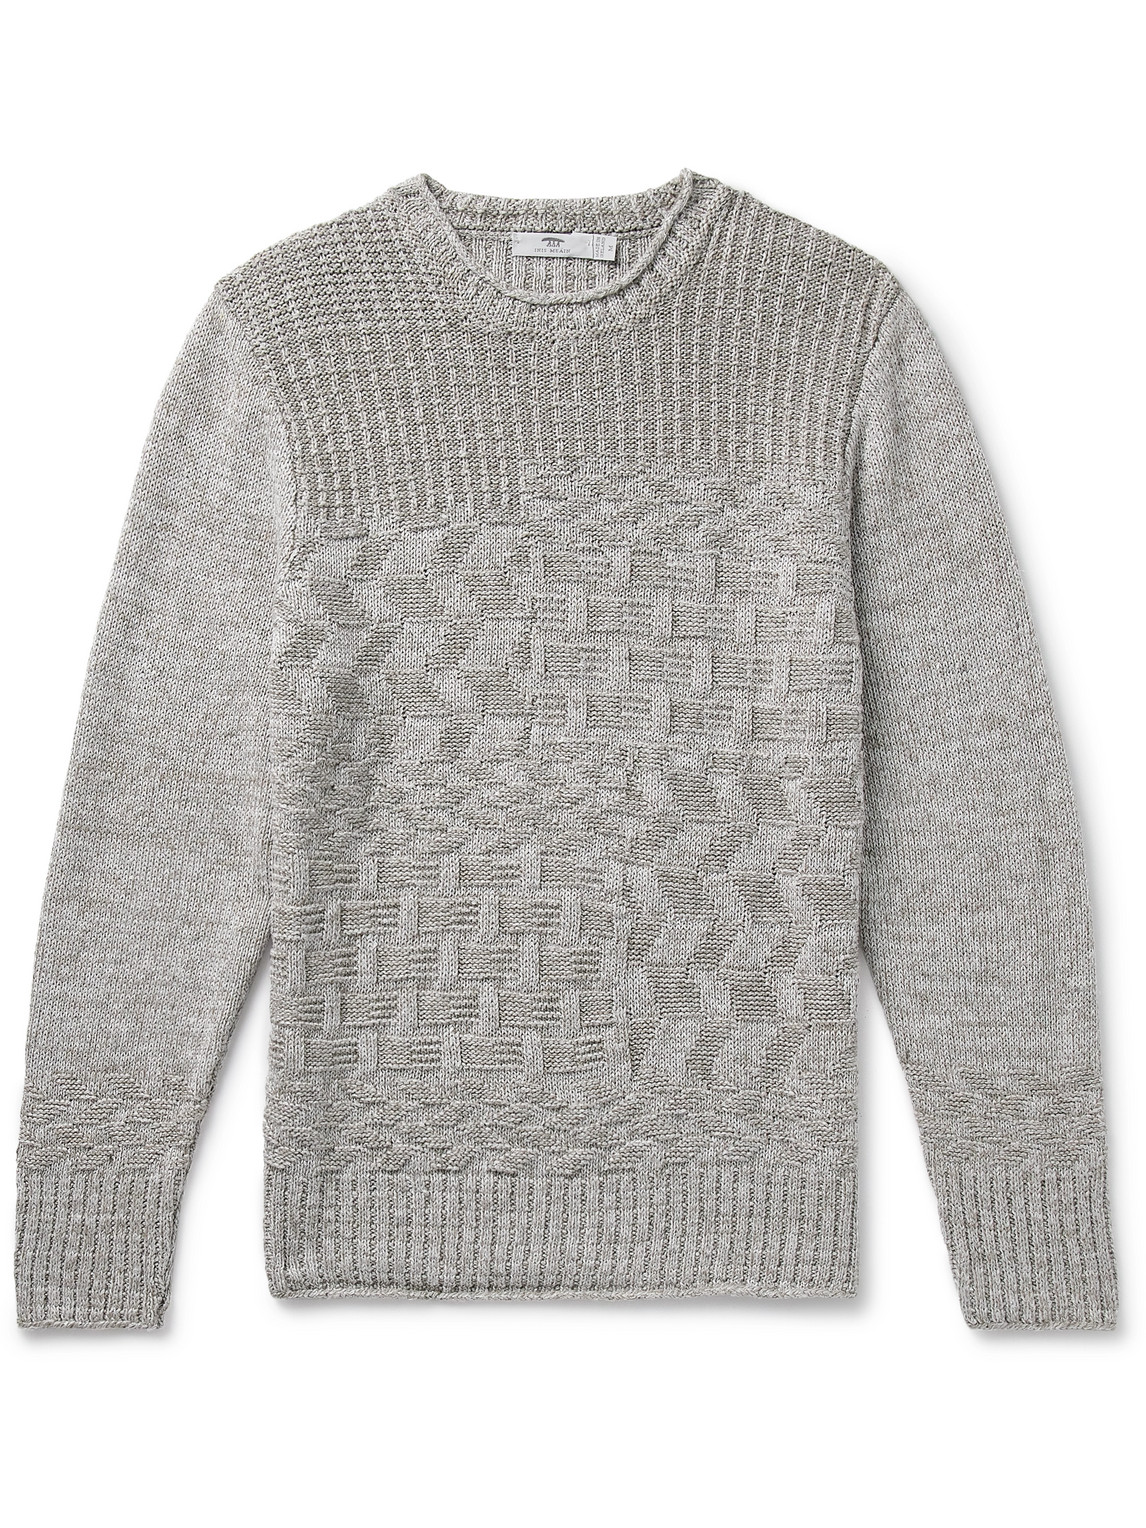 Inis Meain Claíochaí Linen Sweater In Gray